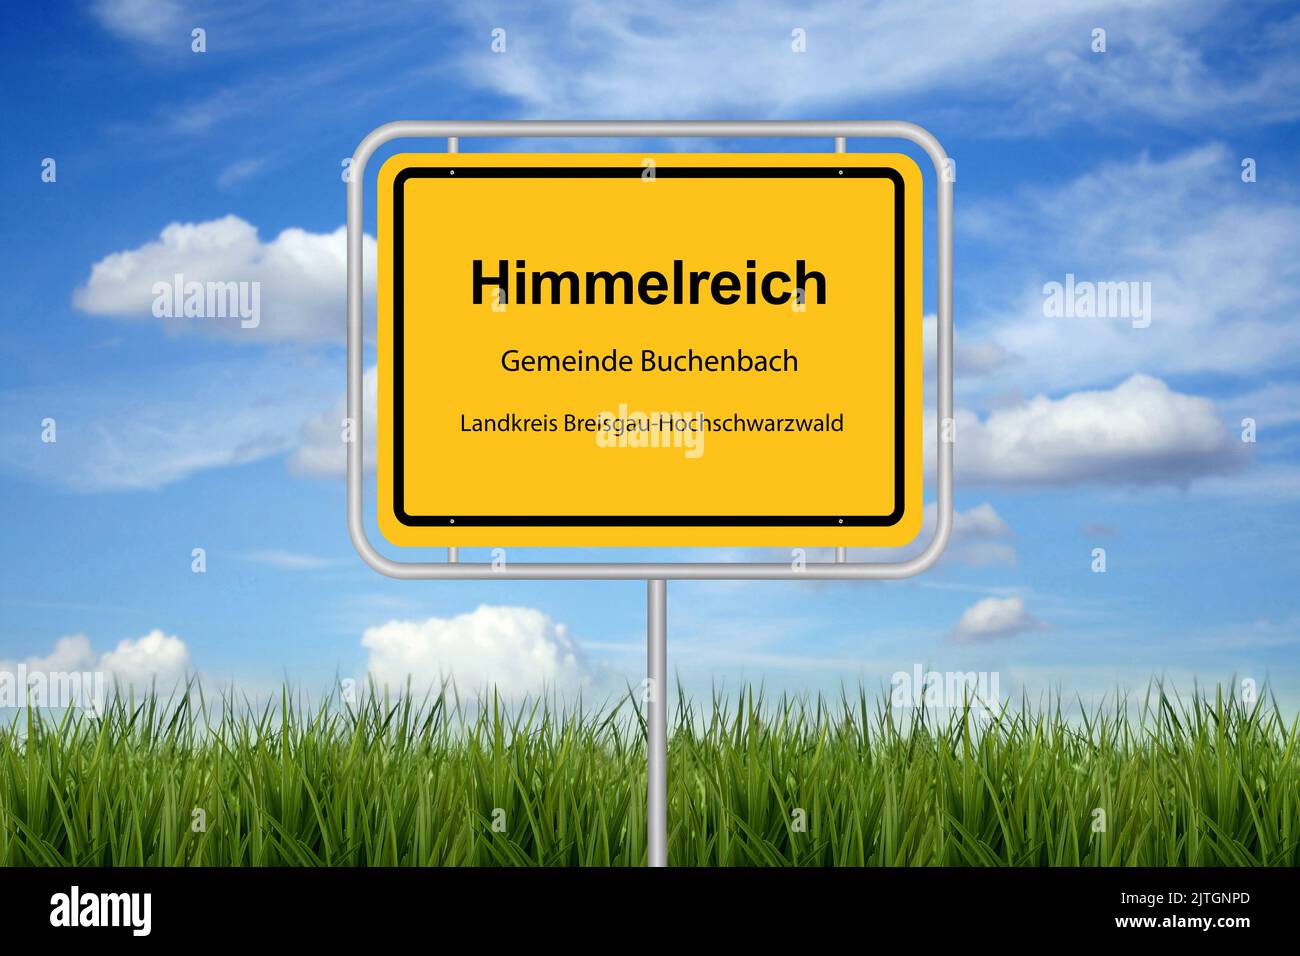 Ville signe lettering Himmelreich (royaume du ciel), Gemeinde Buchenbach, Landkreis Breisgau-Hochschwarzwald, Allemagne, Bade-Wurtemberg Banque D'Images